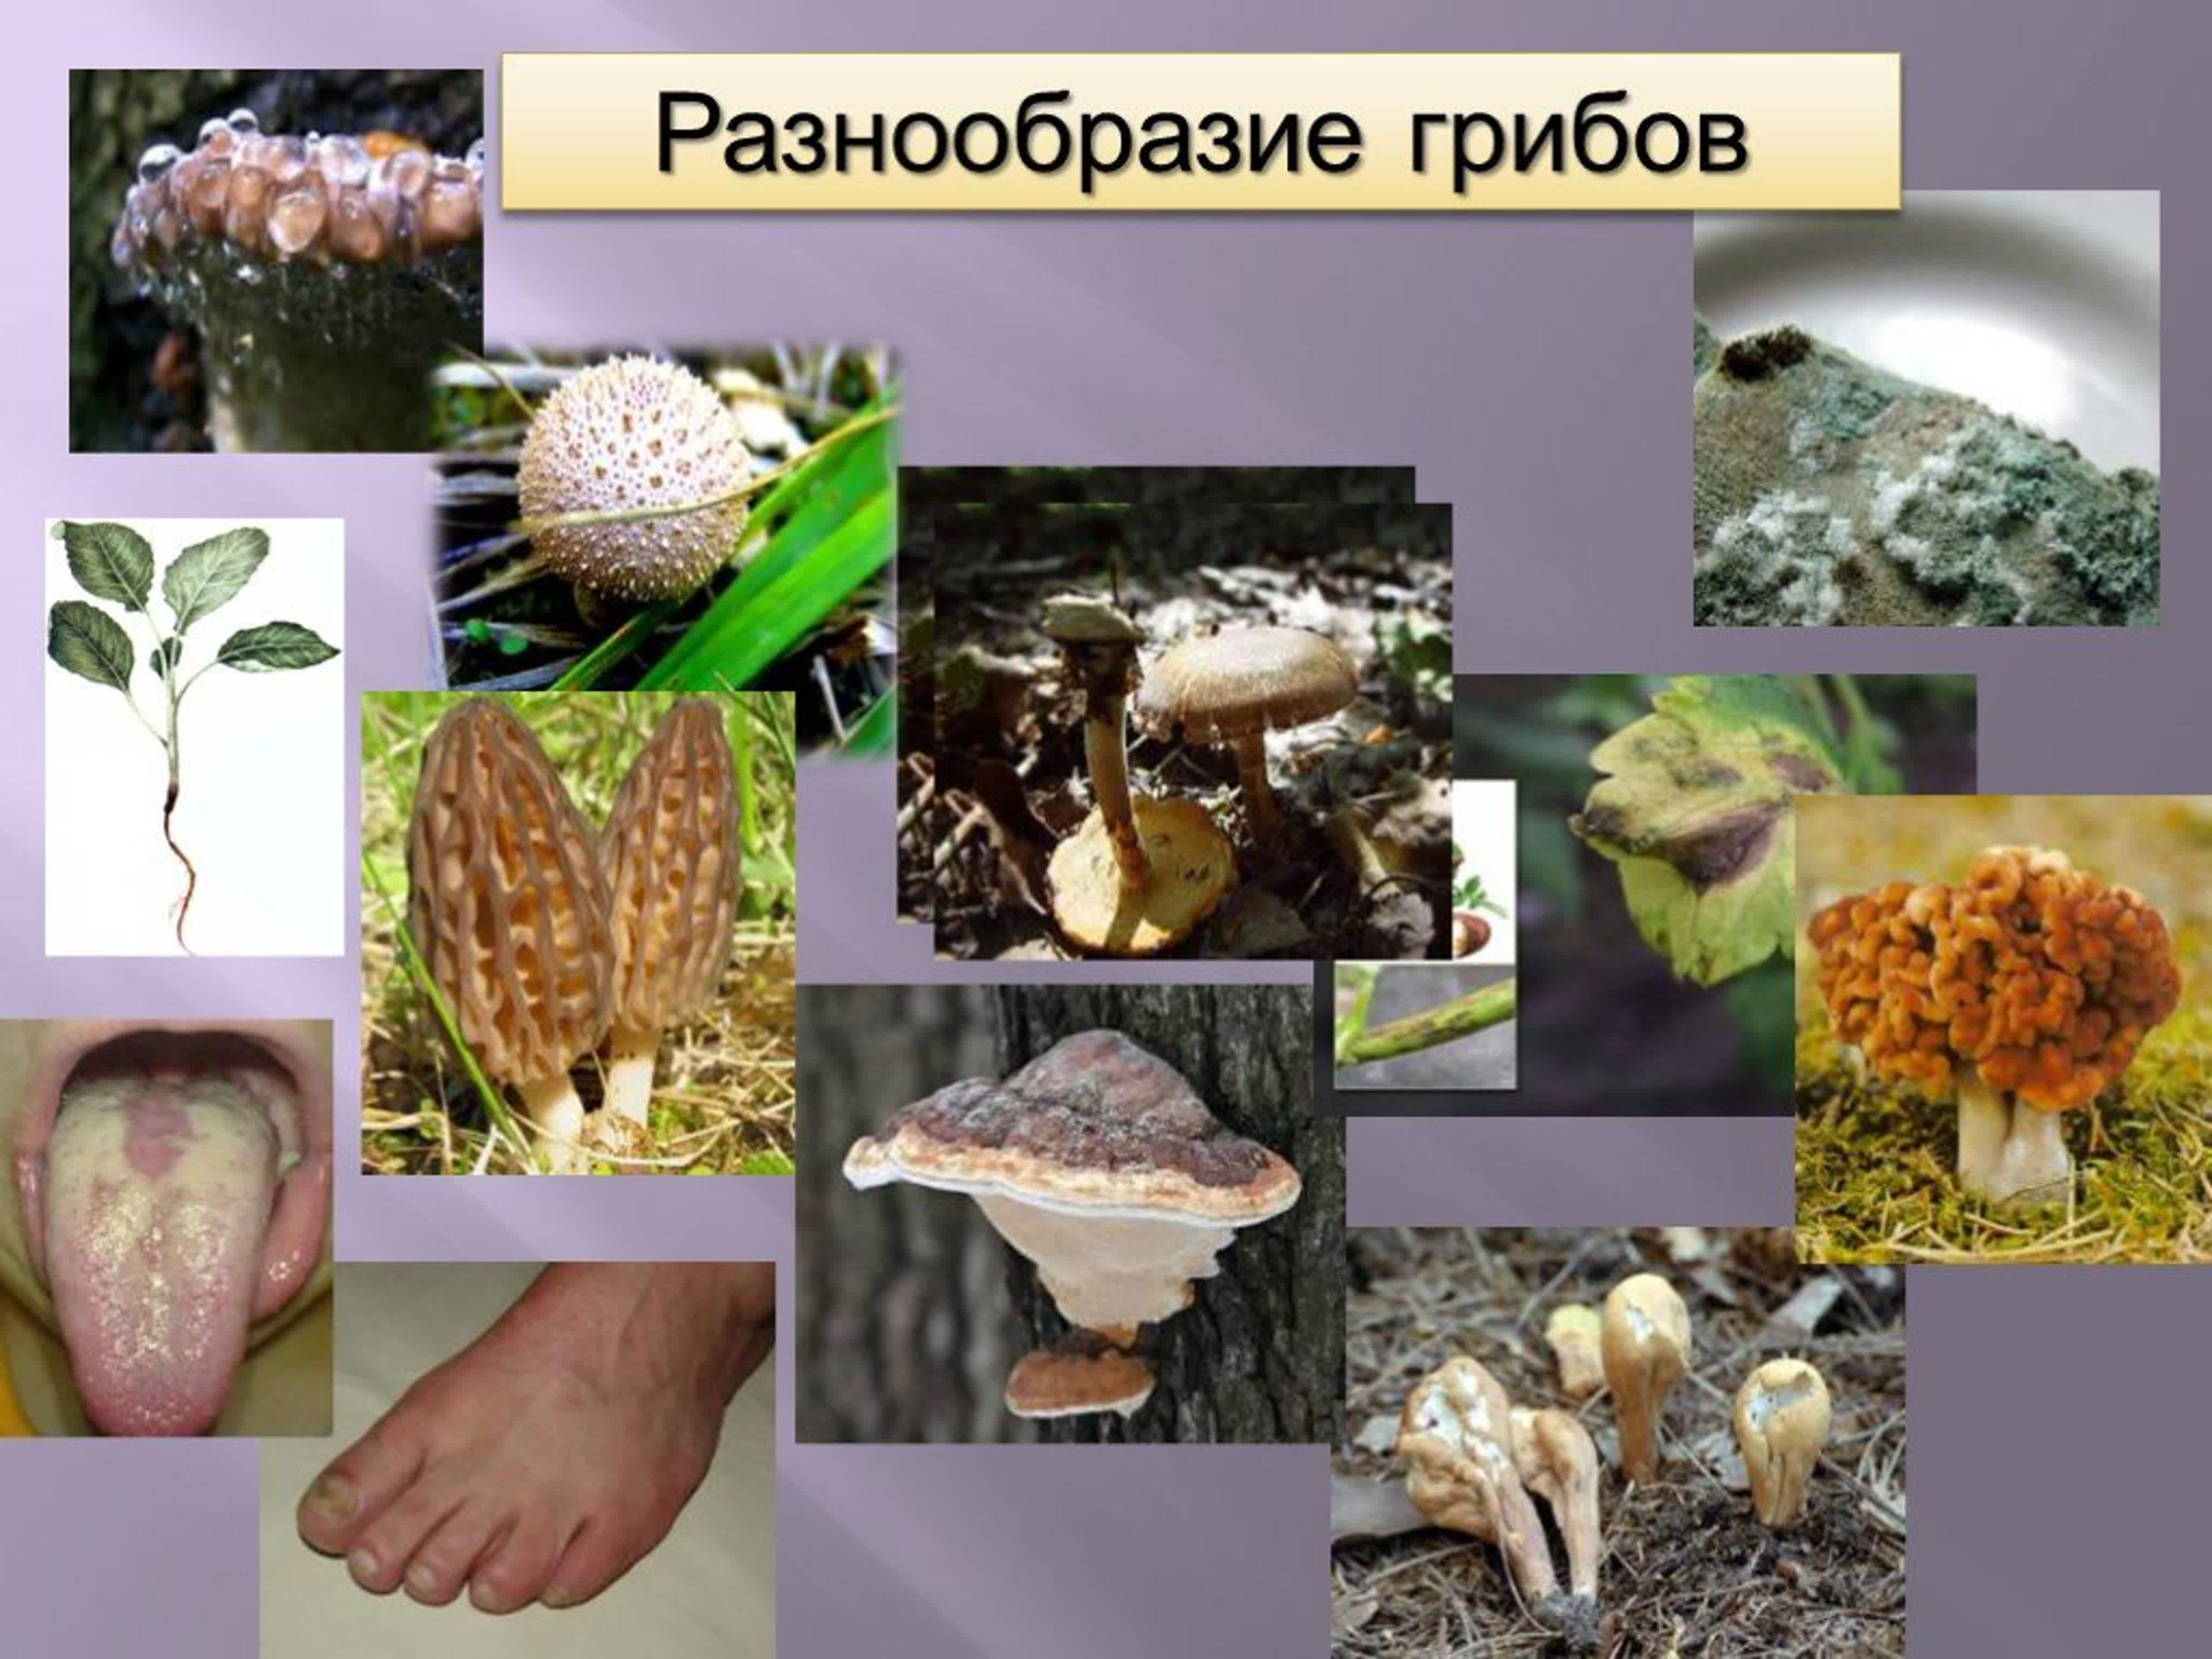 Многообразие где. Разнообразие грибов. Разнообразие грибов в природе. Многообразие царства грибов. Биологическое разнообразие грибов.